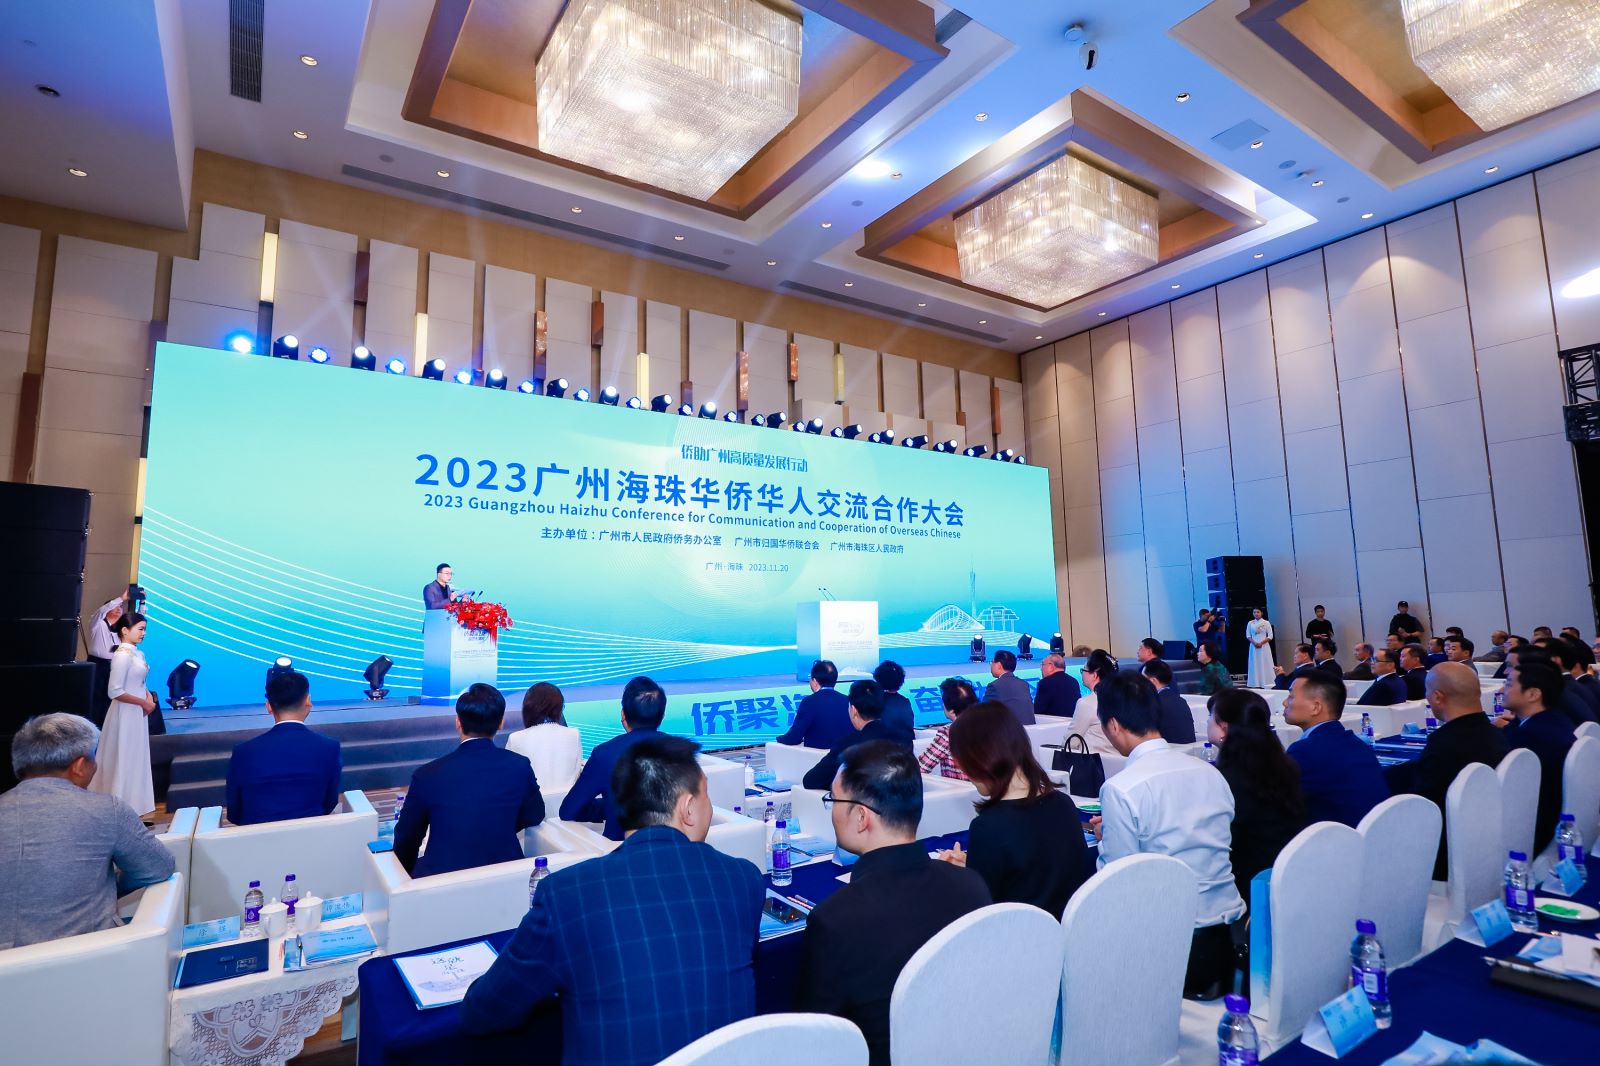 2023穗海珠舉辦華僑華人交流合作大會  簽60億合作項目